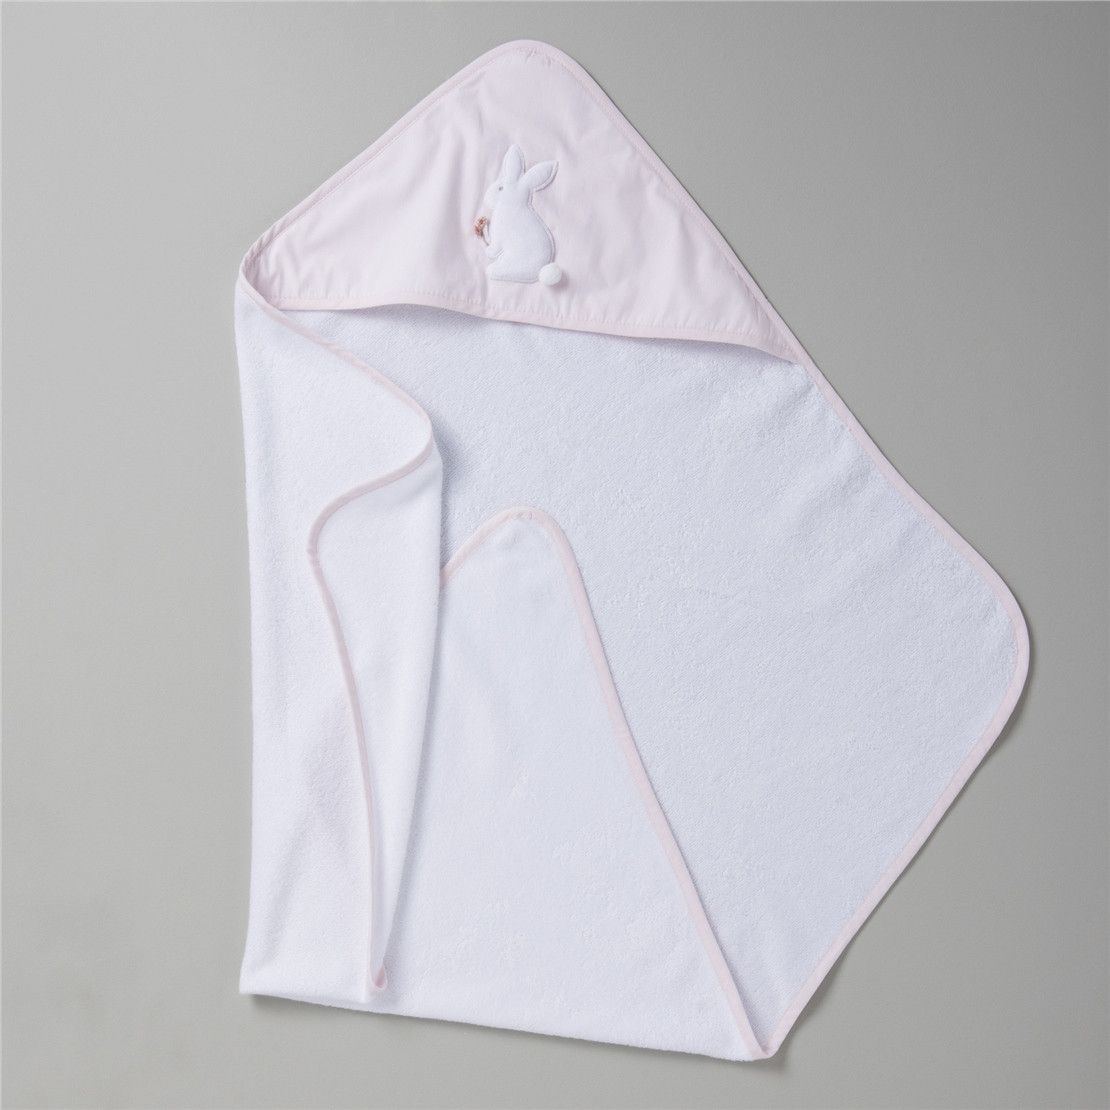 Полотенце - углок для новорожденных ROSA 129*97 белое с розовым